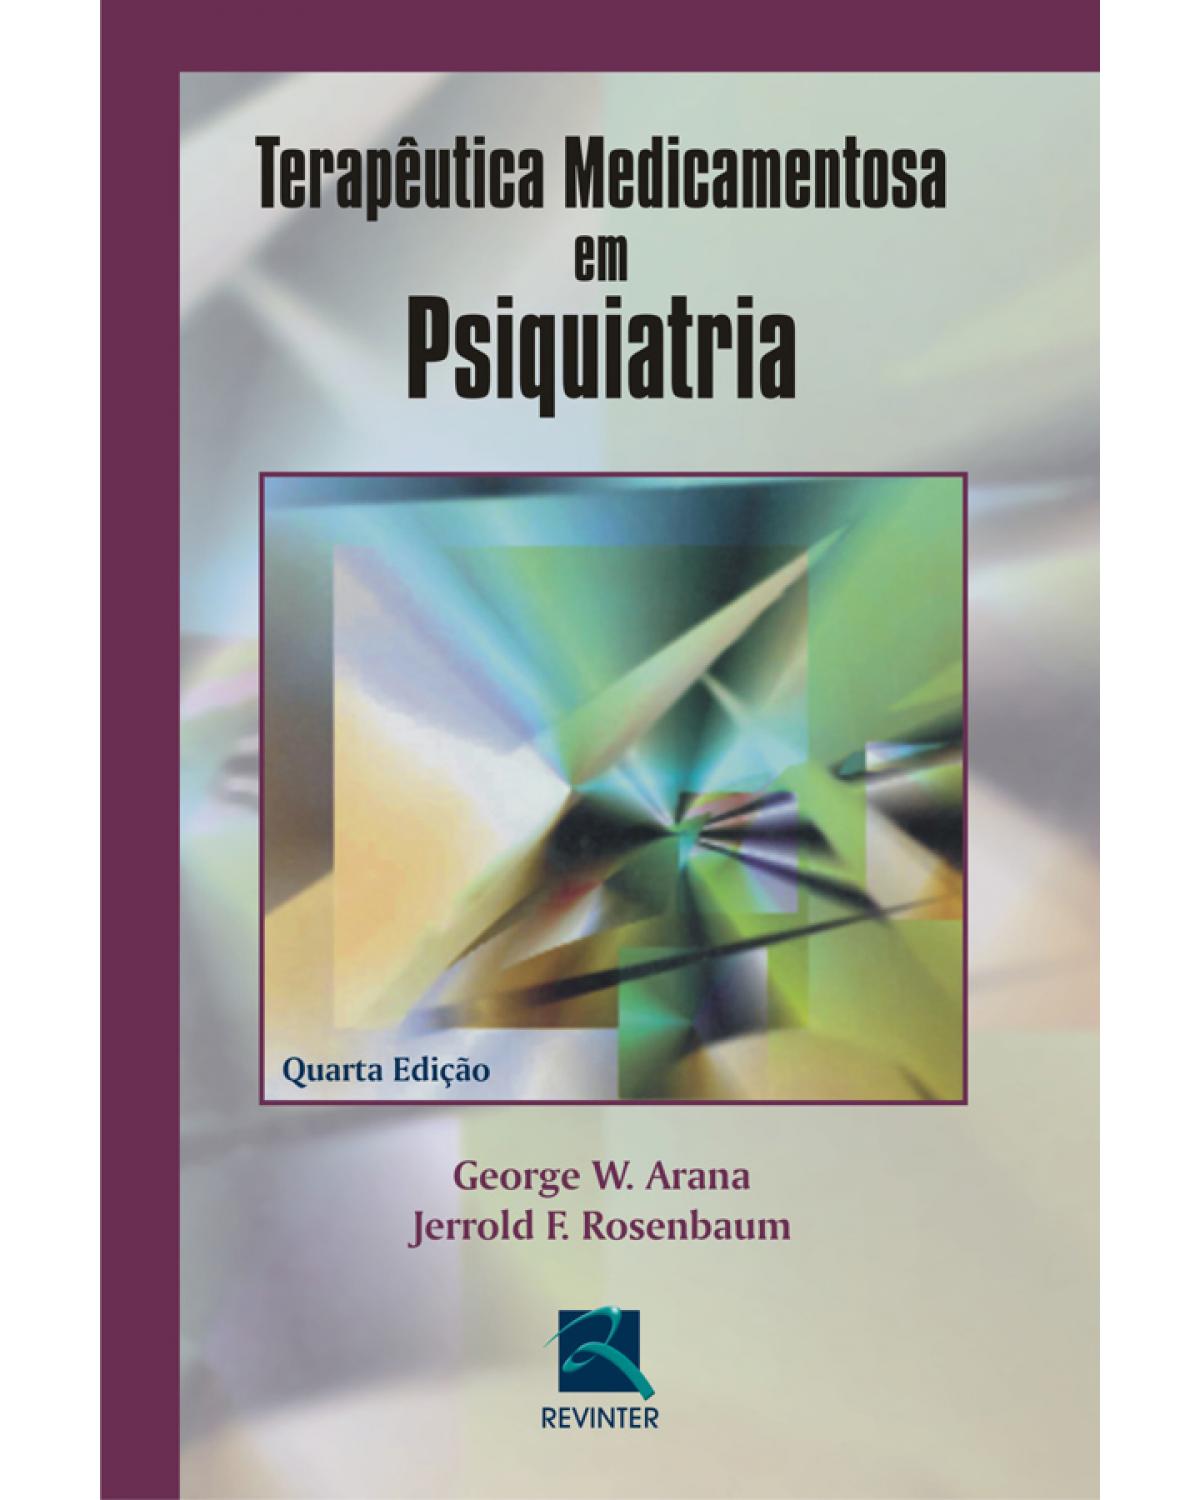 Terapêutica medicamentosa em psiquiatria - 4ª Edição | 2006